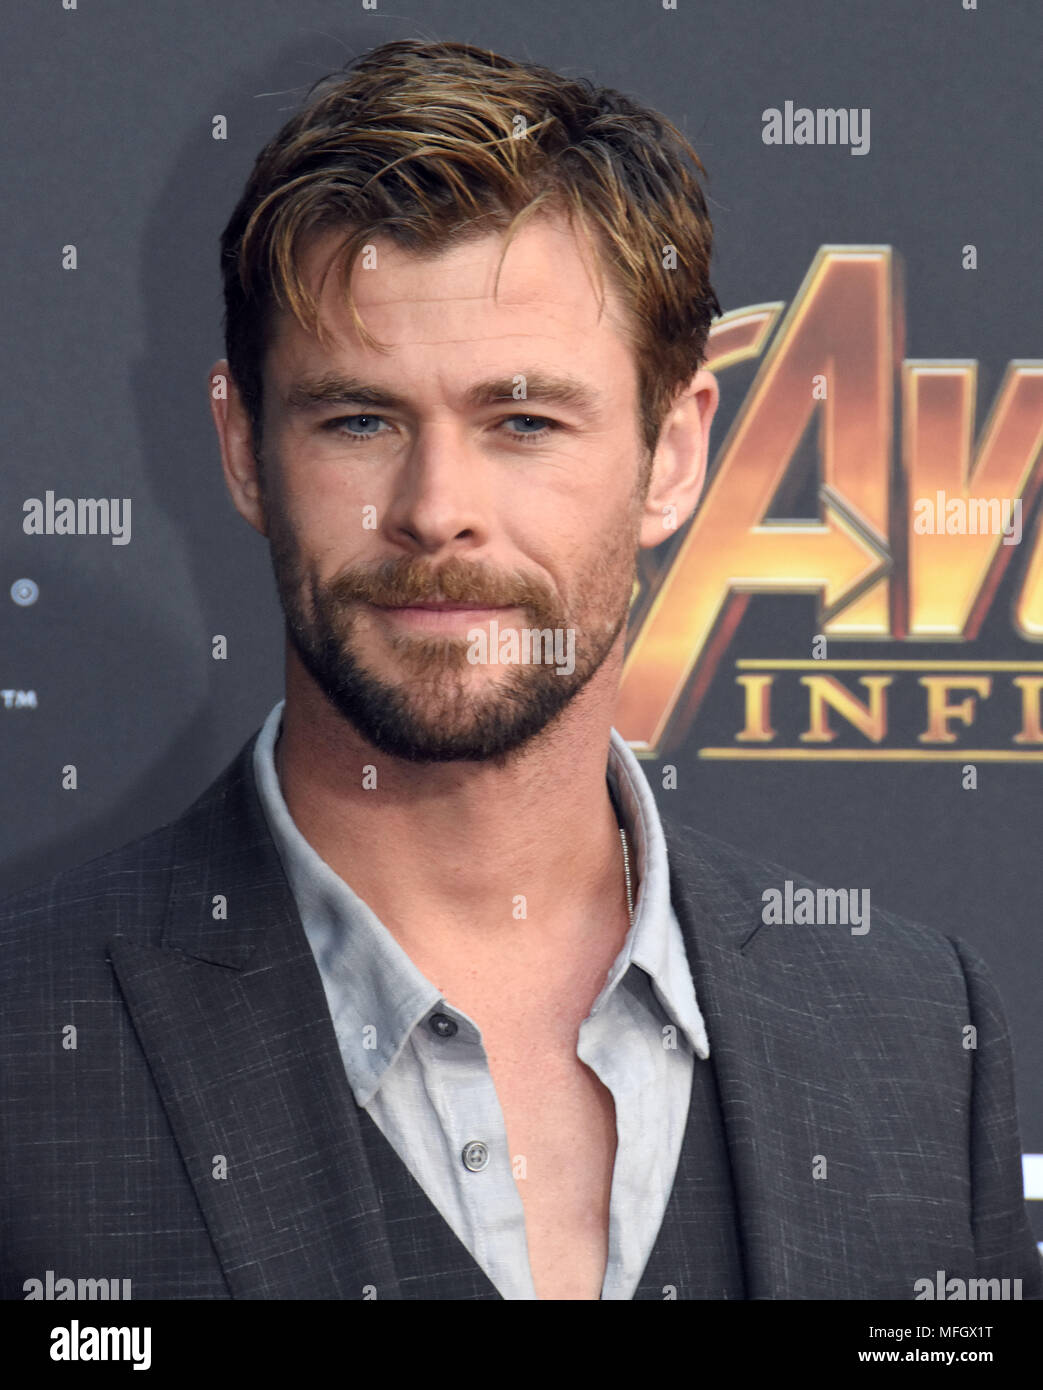 LOS ANGELES, Ca - 23. April: Schauspieler Chris Hemsworth besucht die Weltpremiere von Disney und Wunder "Avengers: Infinity Krieg" am 23. April 2018 in Los Angeles, Kalifornien. Foto von Barry King/Alamy leben Nachrichten Stockfoto